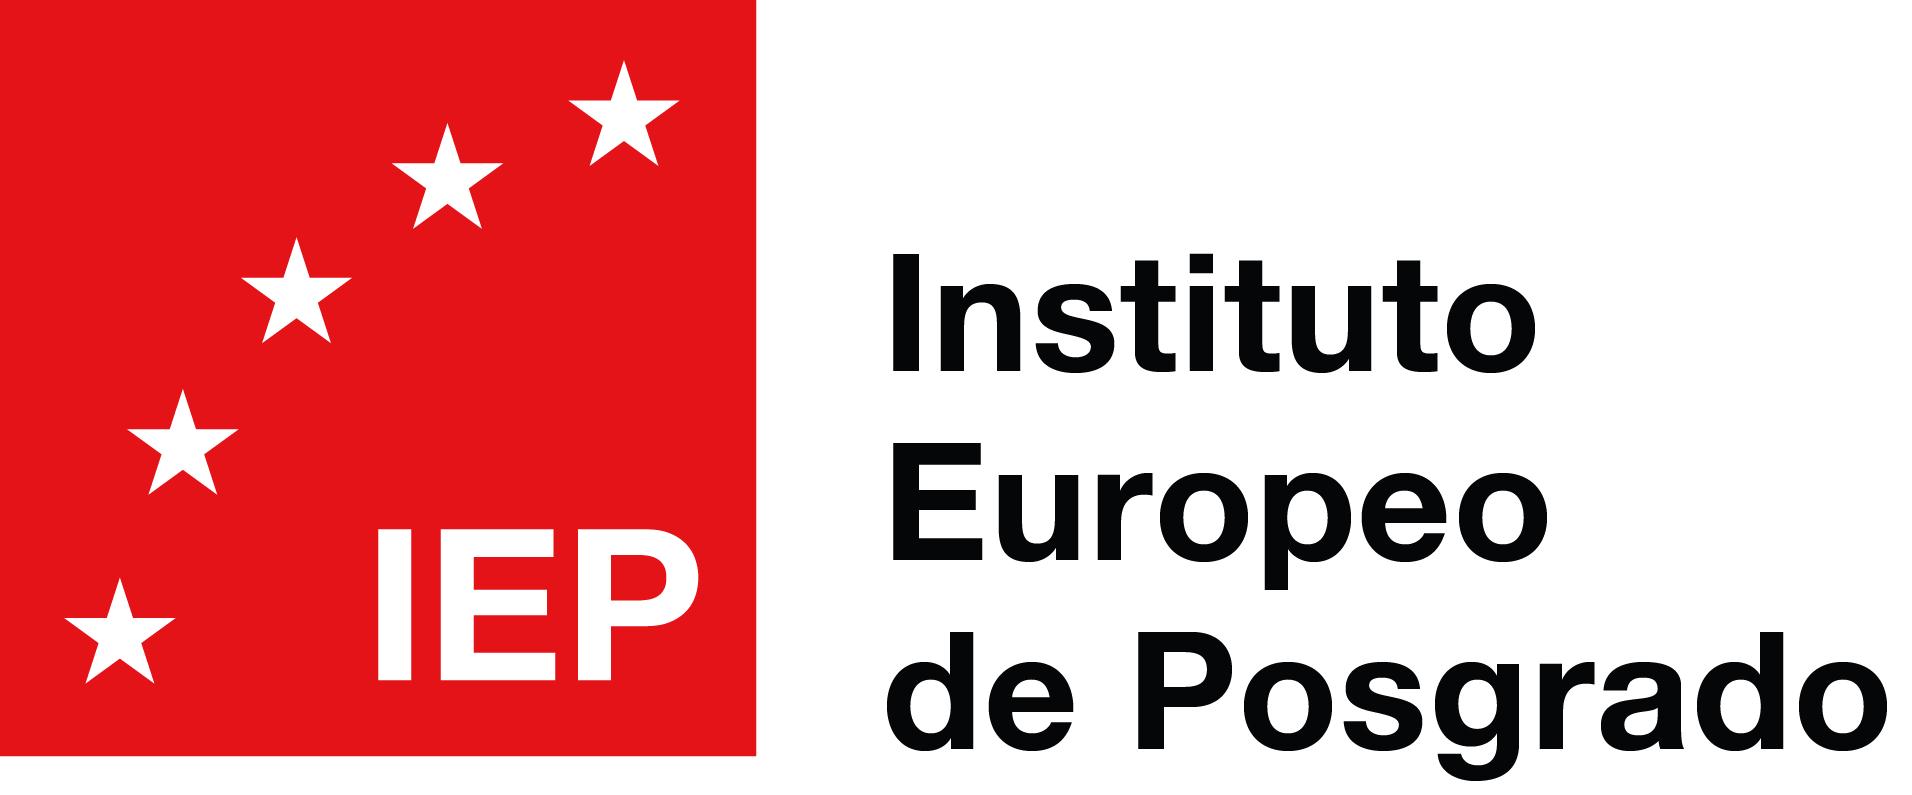 Máster en Project Management - IEP - Instituto Europeo de Posgrado